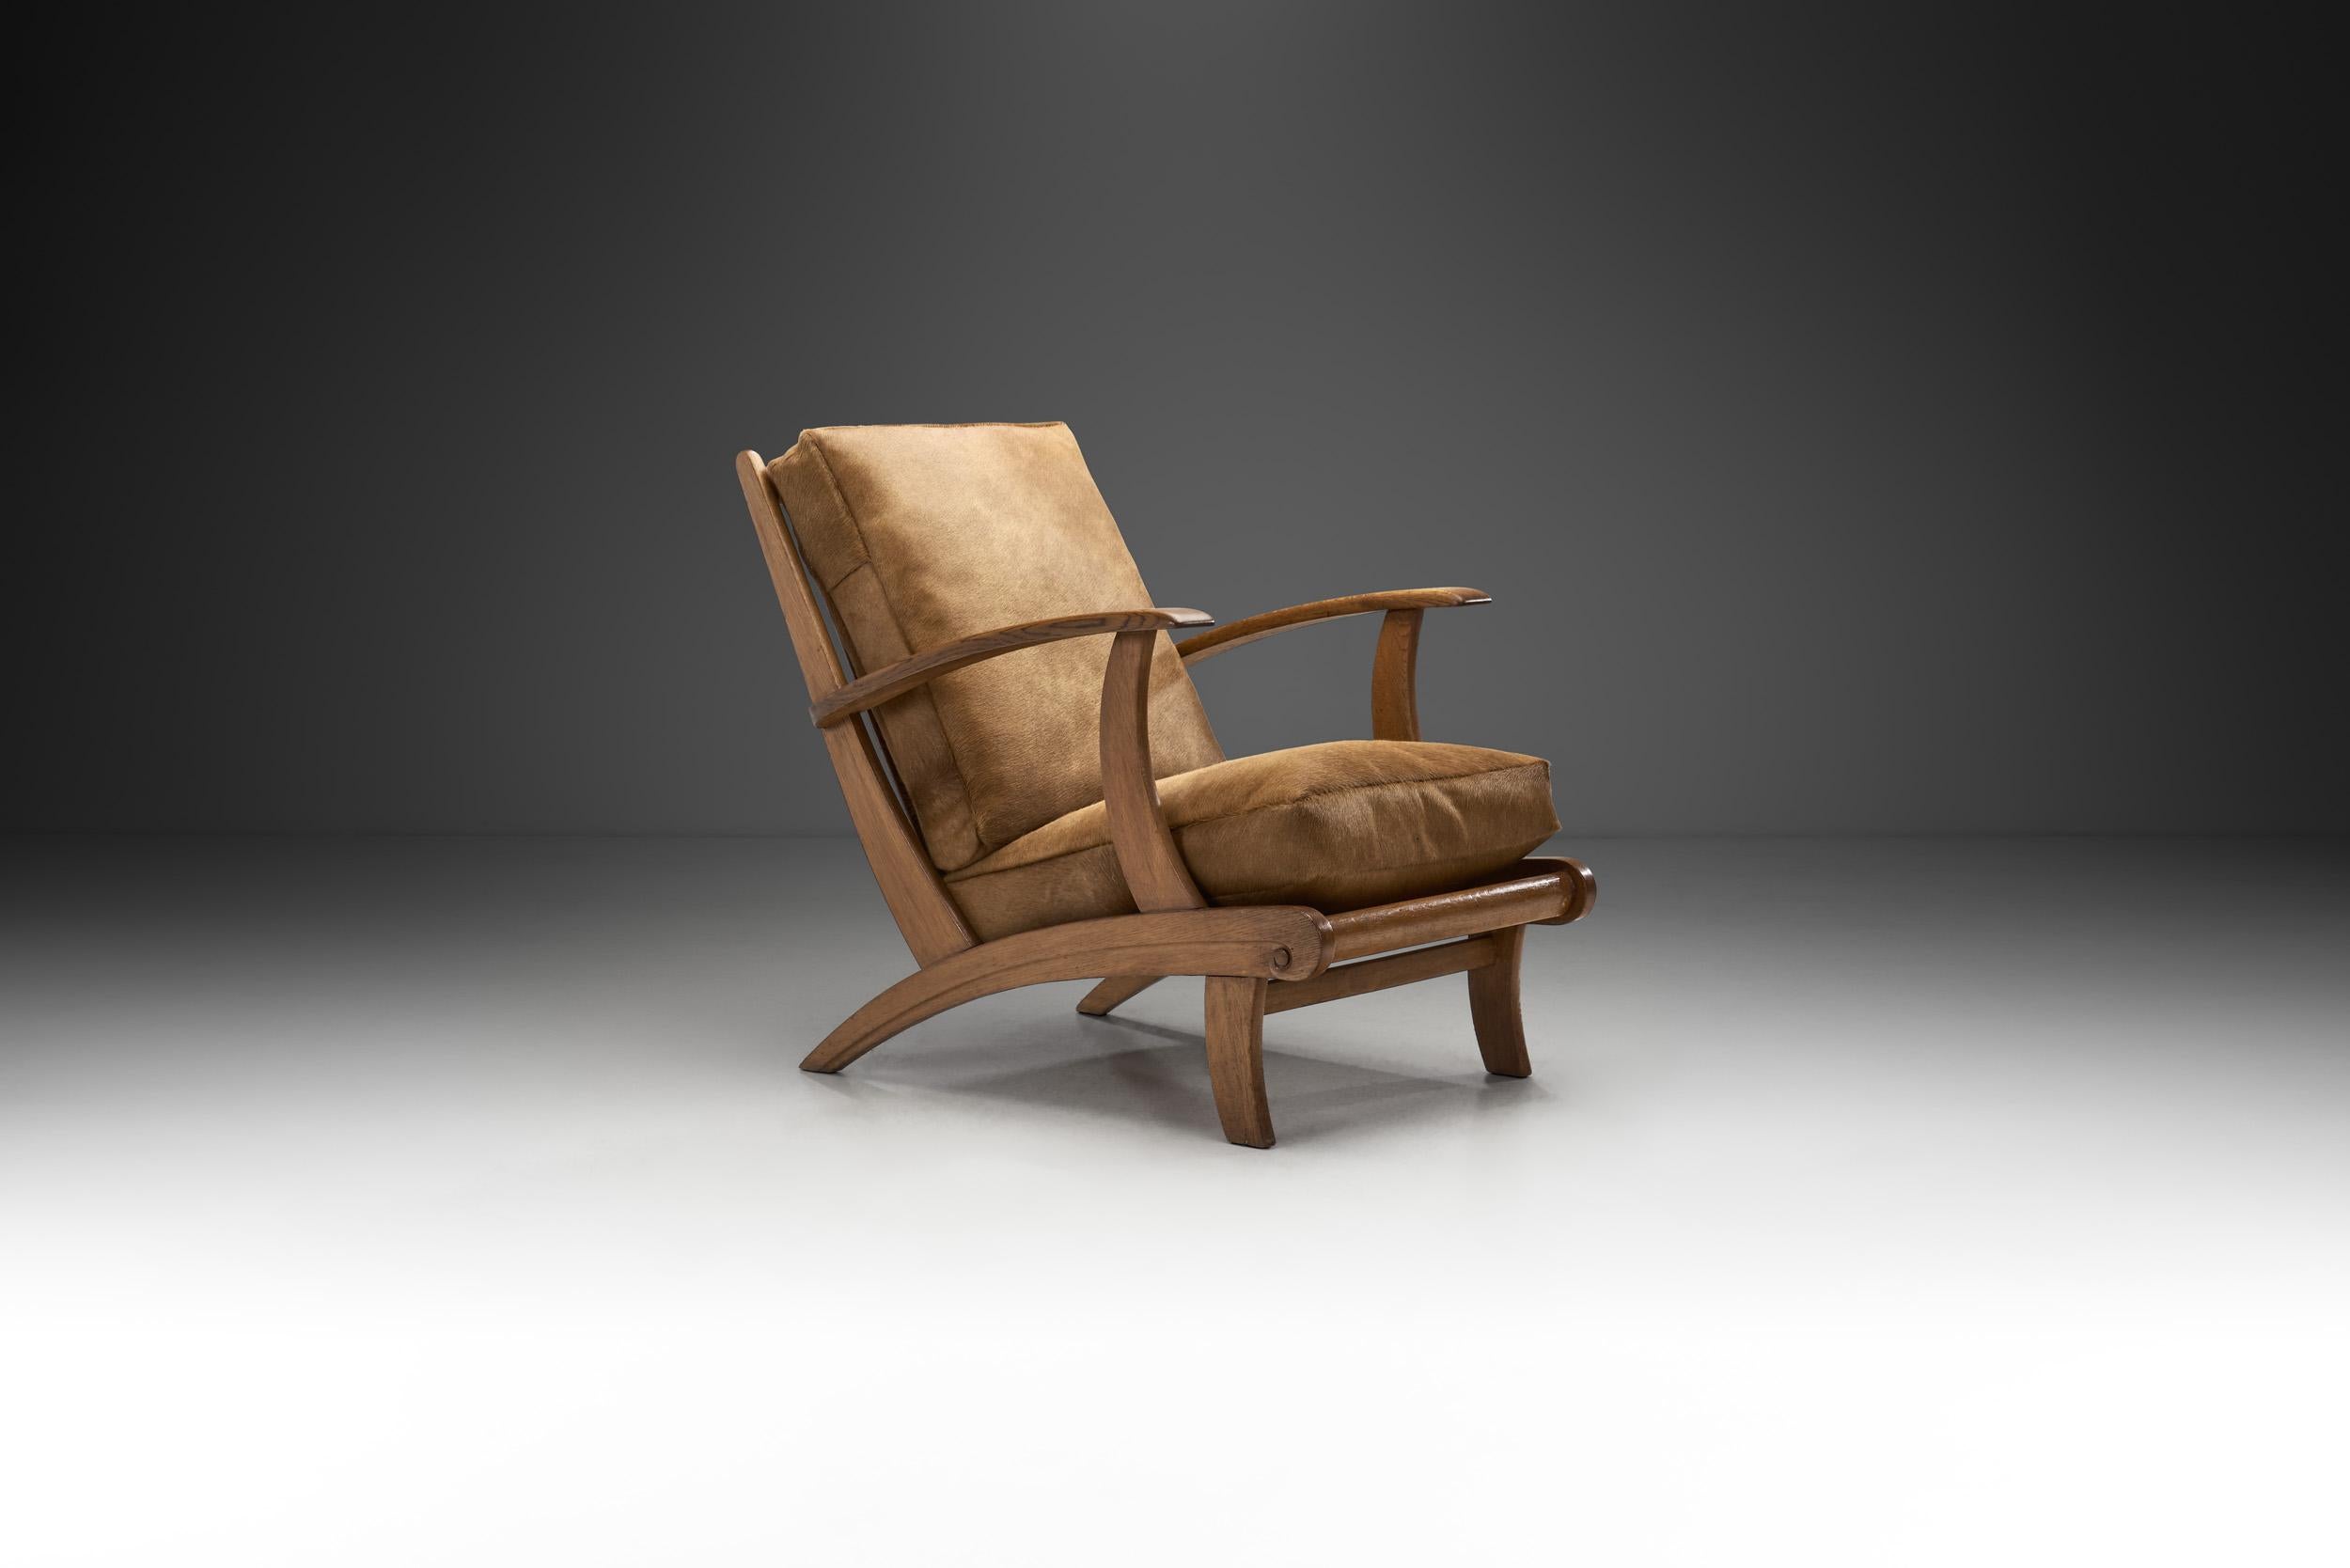 Dieser Stuhl ist voller außergewöhnlicher Merkmale und Details, die ihn zu einem einzigartigen Beispiel für den kreativen Überschwang machen, der den Modernismus der Mitte des Jahrhunderts in Europa prägte. Das skulpturale Design ist gepaart mit der